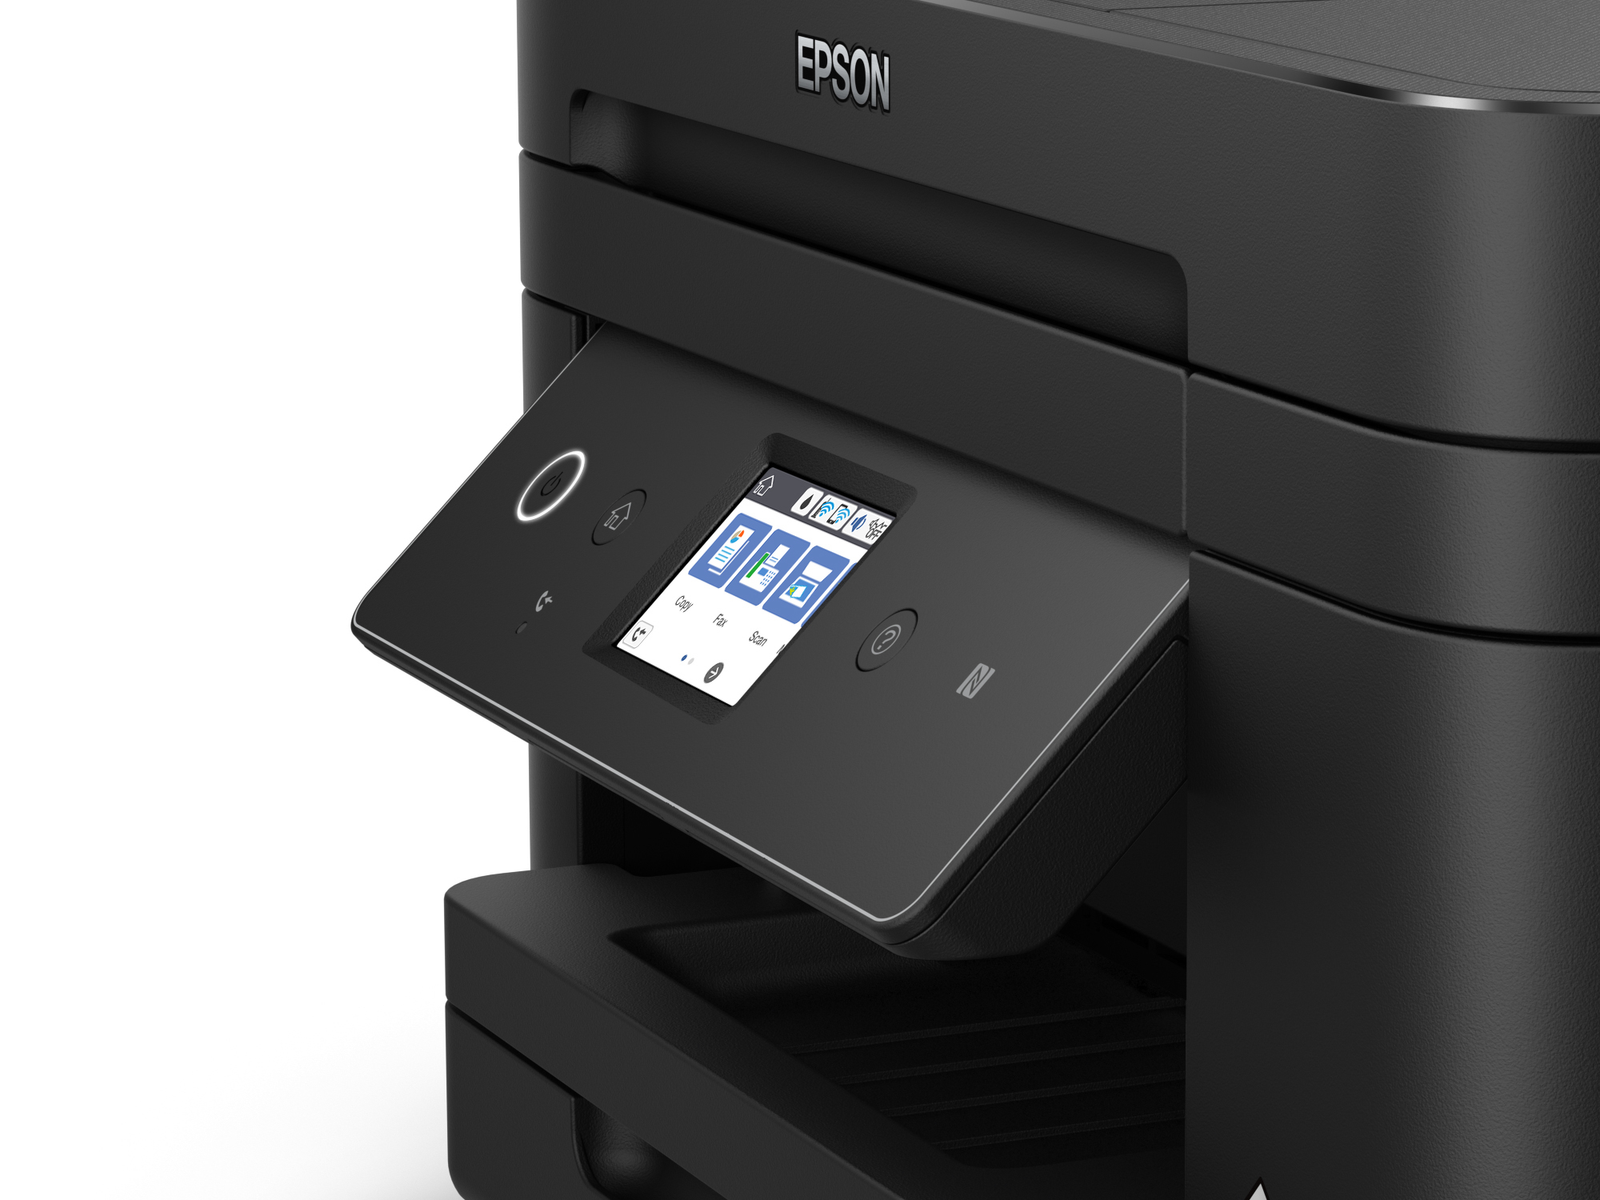 EPSON WF-2880DWF Tintenstrahldruck Drucker, Tintenstrahl-Multifunktionsdrucker WLAN Netzwerkfähig 4in1